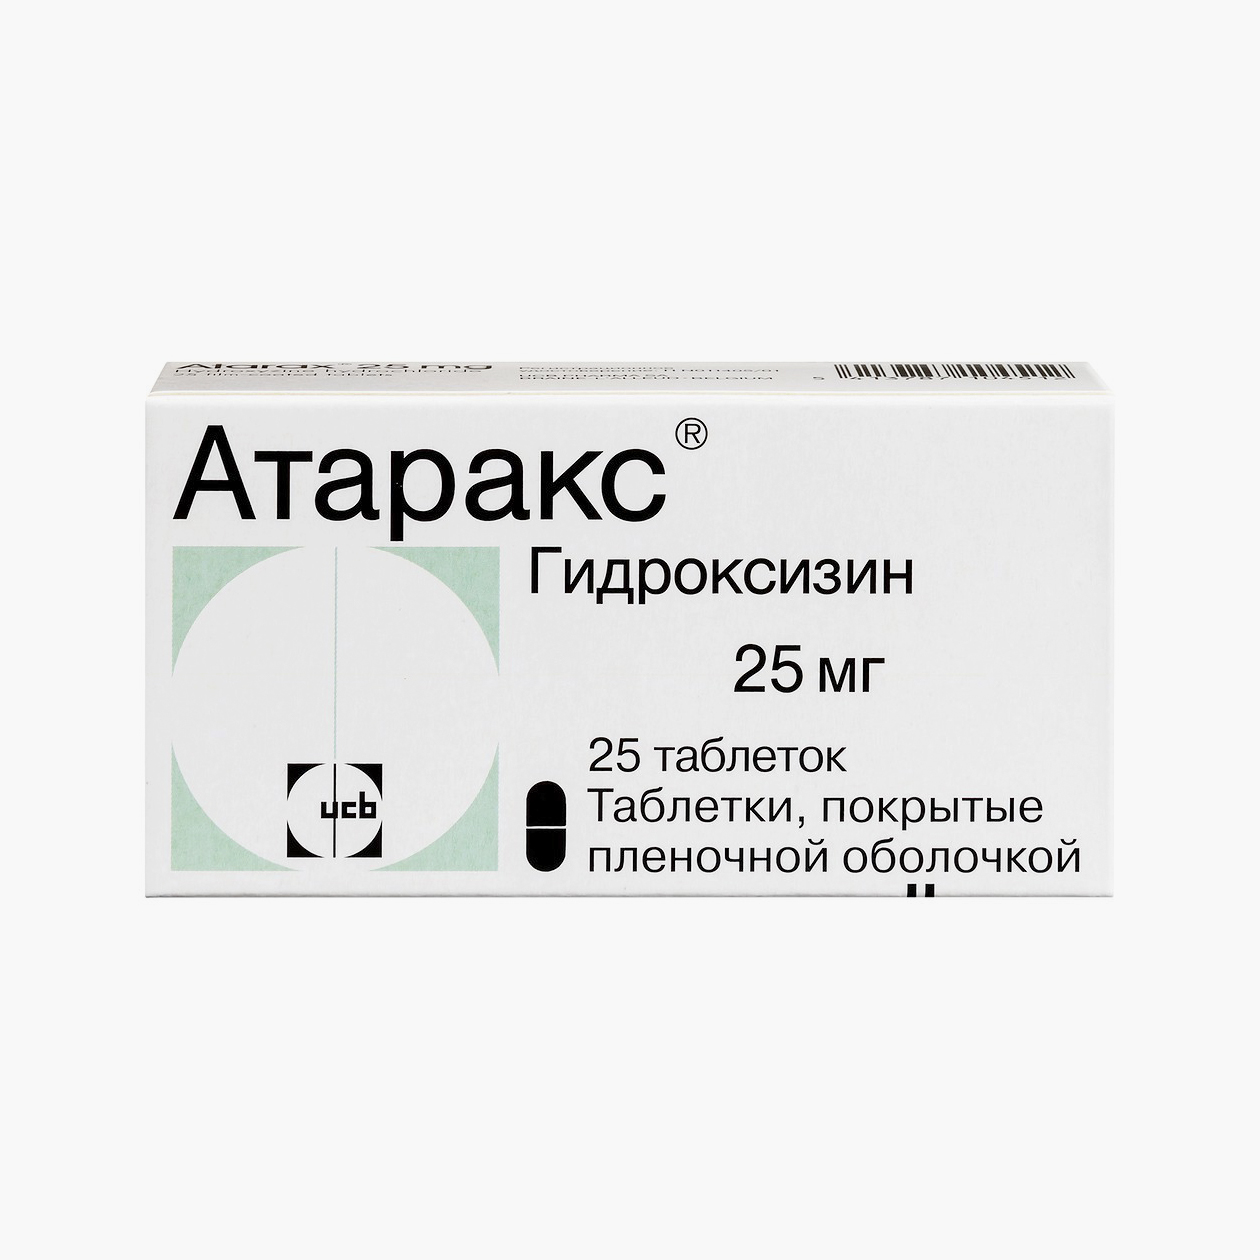 Атаракс — препарат на основе гидроксизина. Источник: asna.ru